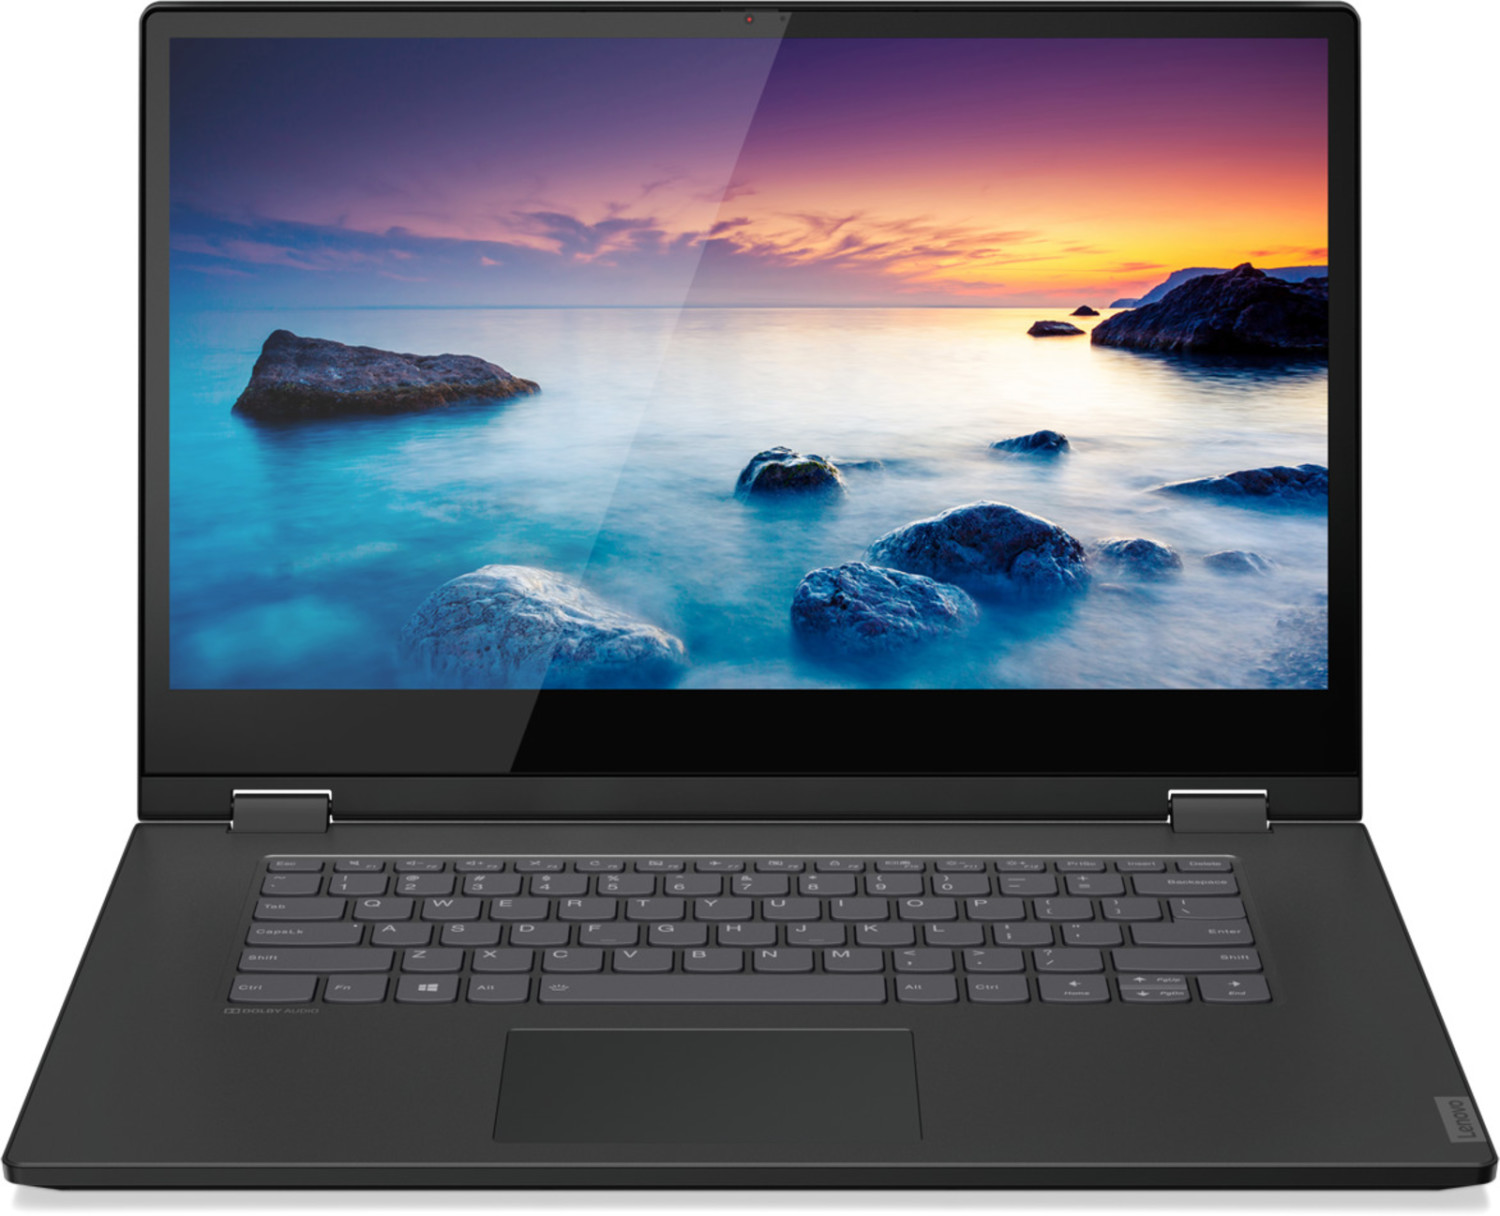 Lenovo IdeaPad C340-14 (81TK003DGE) 14 Zoll i5-10210U 8GB RAM 512GB SSD GeForce MX 230 Win10H onyx black